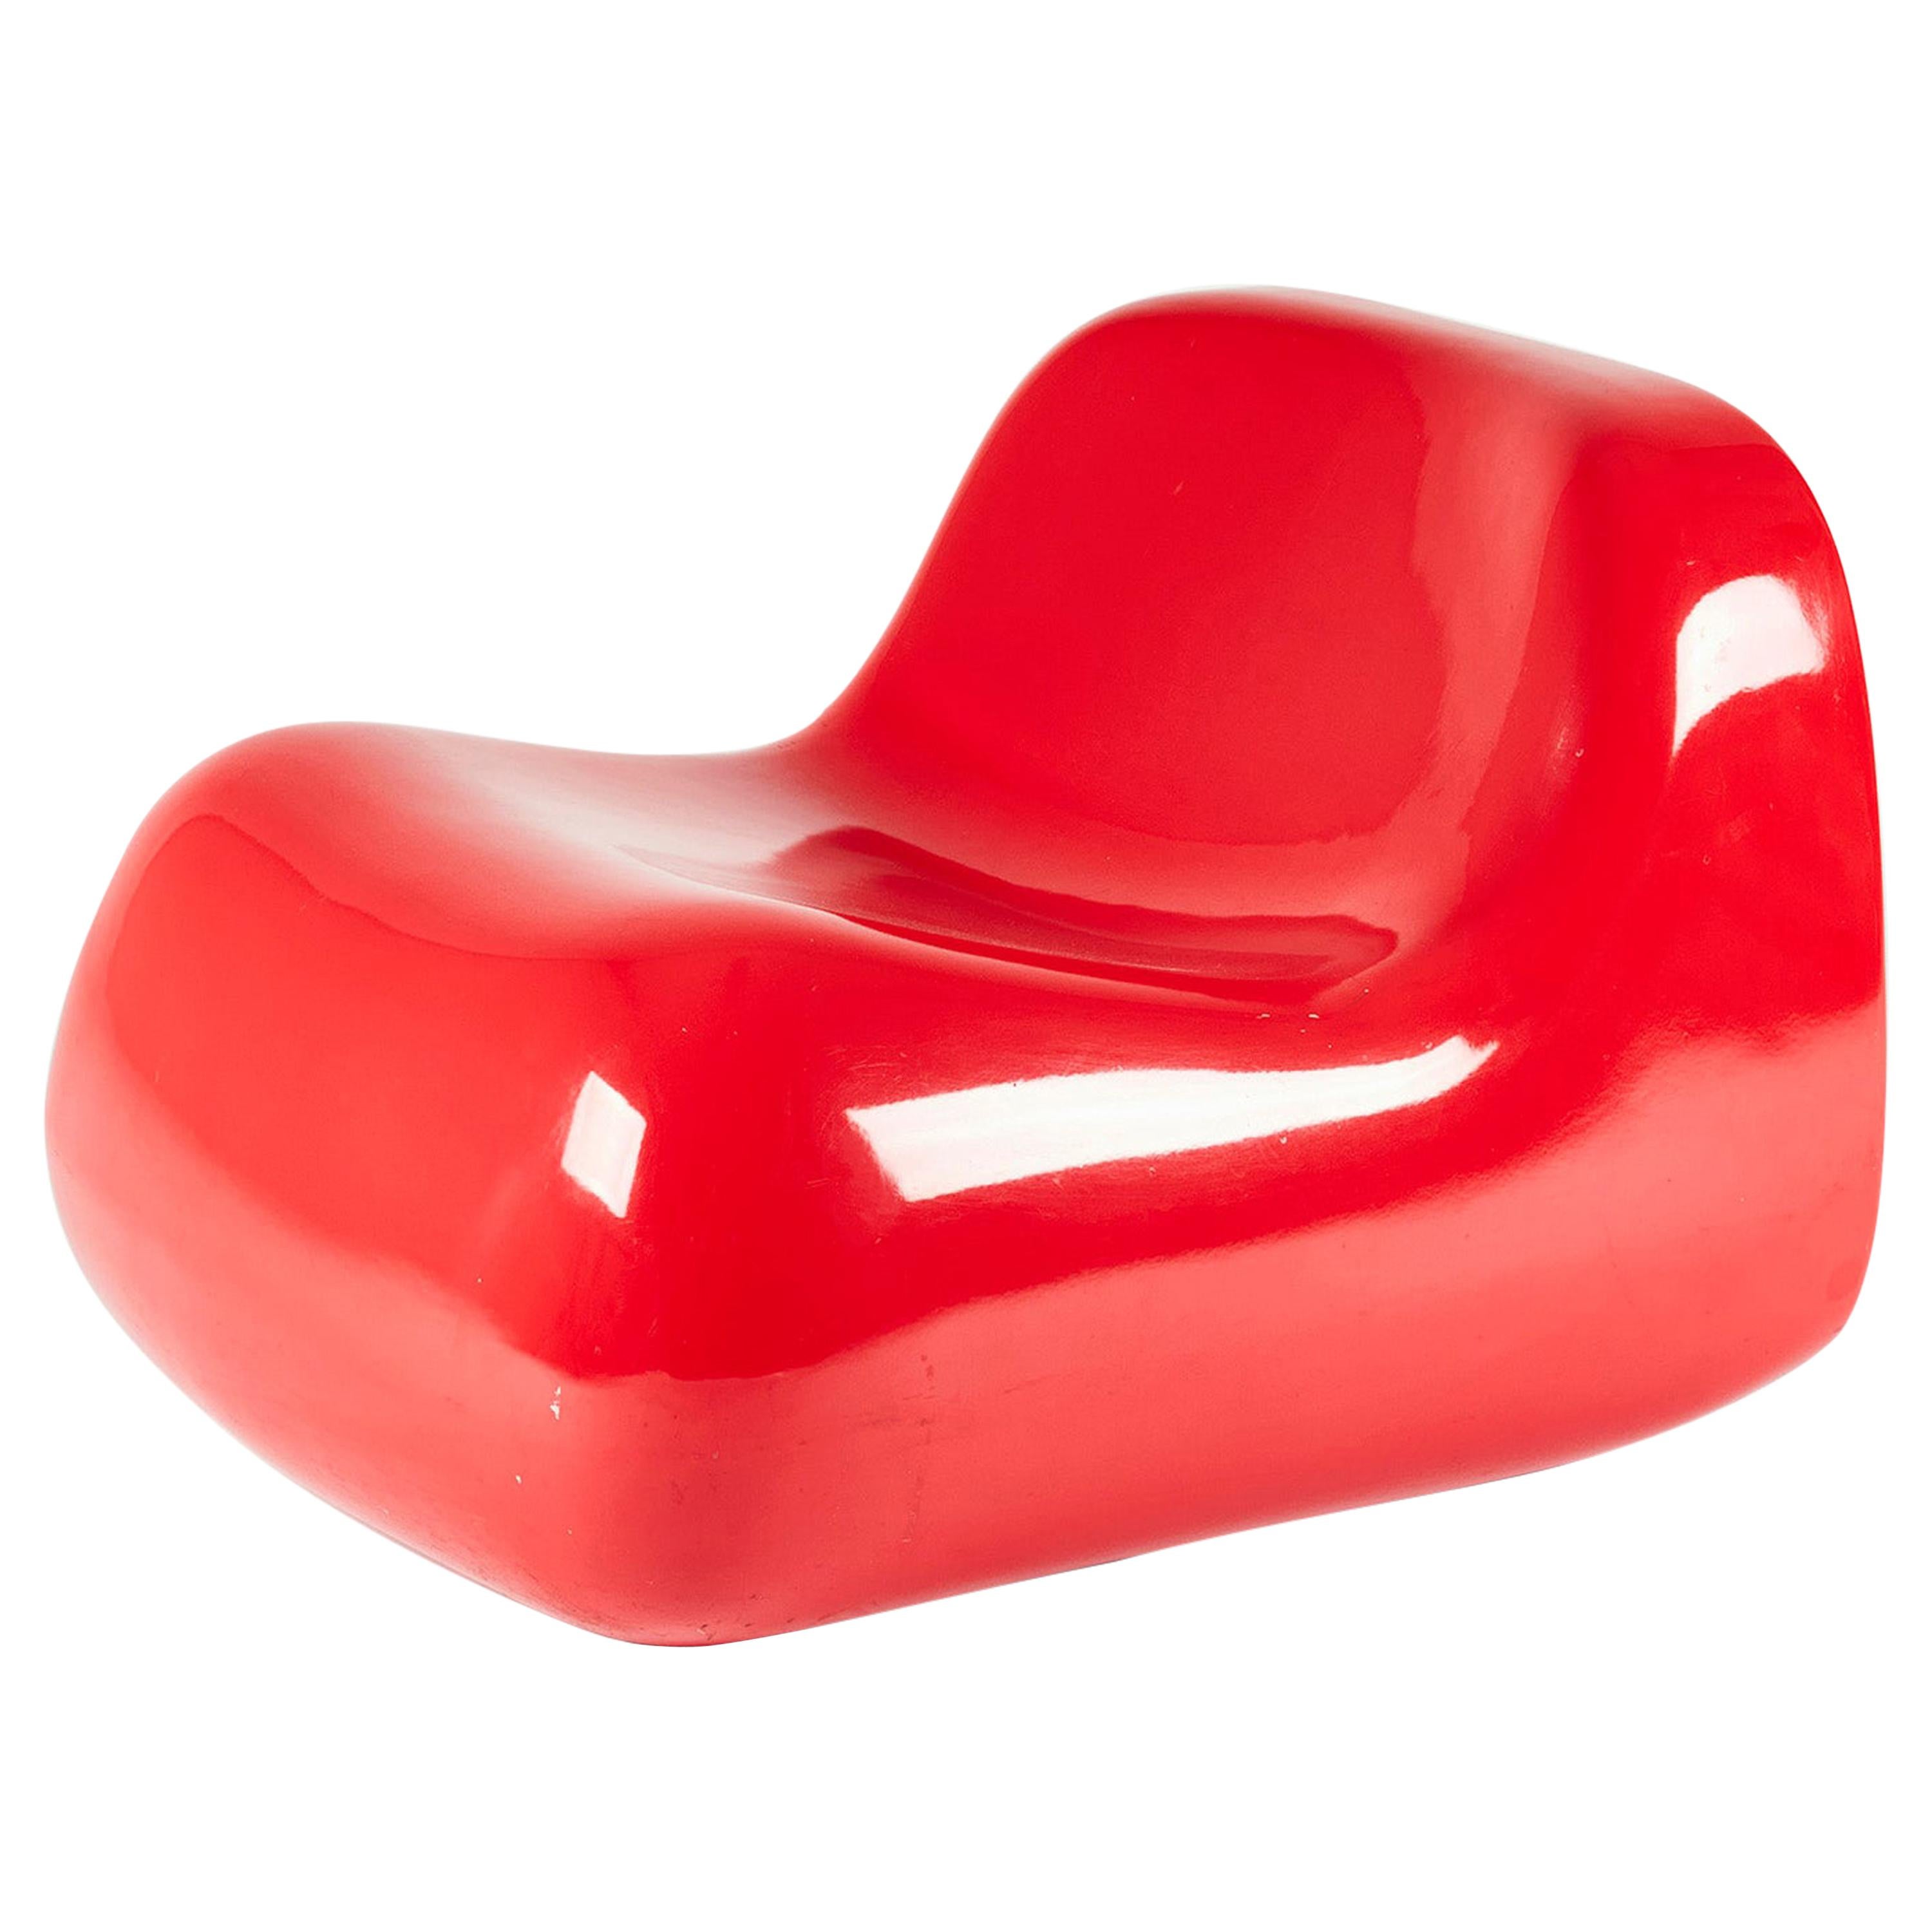 Red Fiberglass "Jumbo" Chair by Alberto Rosselli for Saporiti